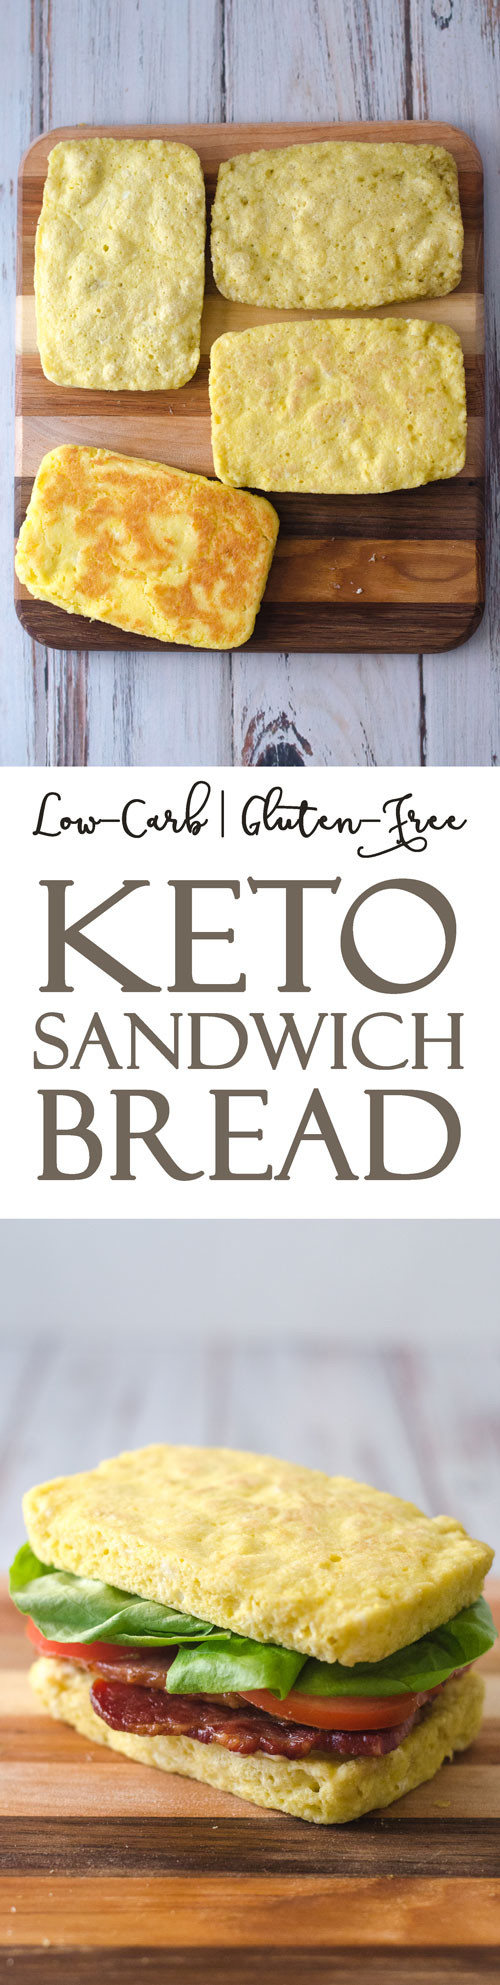 Gluten Free Microwave Bread
 Keto Microwave Sandwich Bread Paleo Gluten Free The